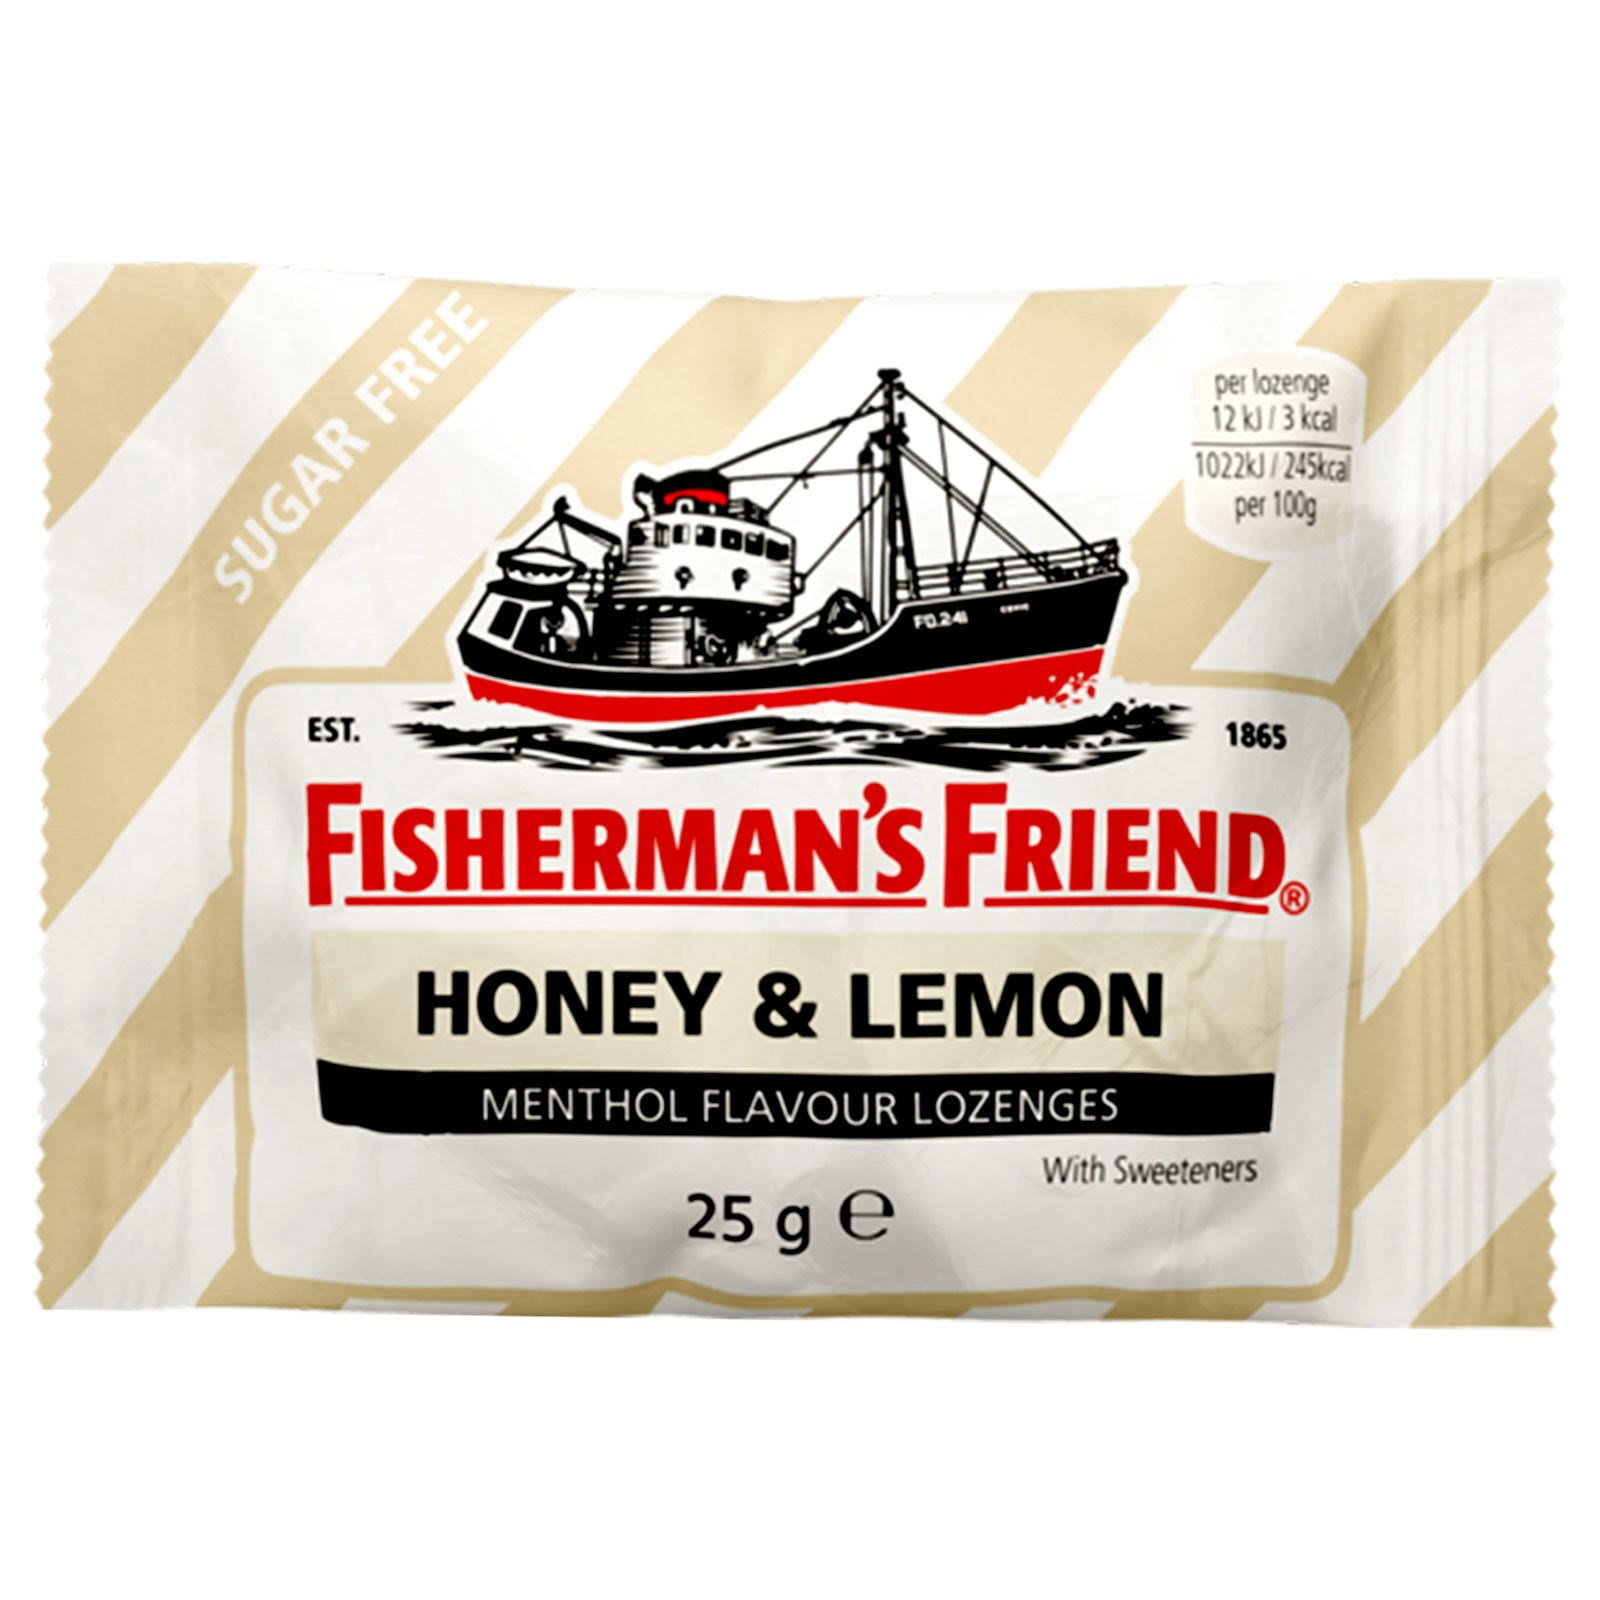 Fisherman's Friend Honey & Lemon Lozenges Pack of 24